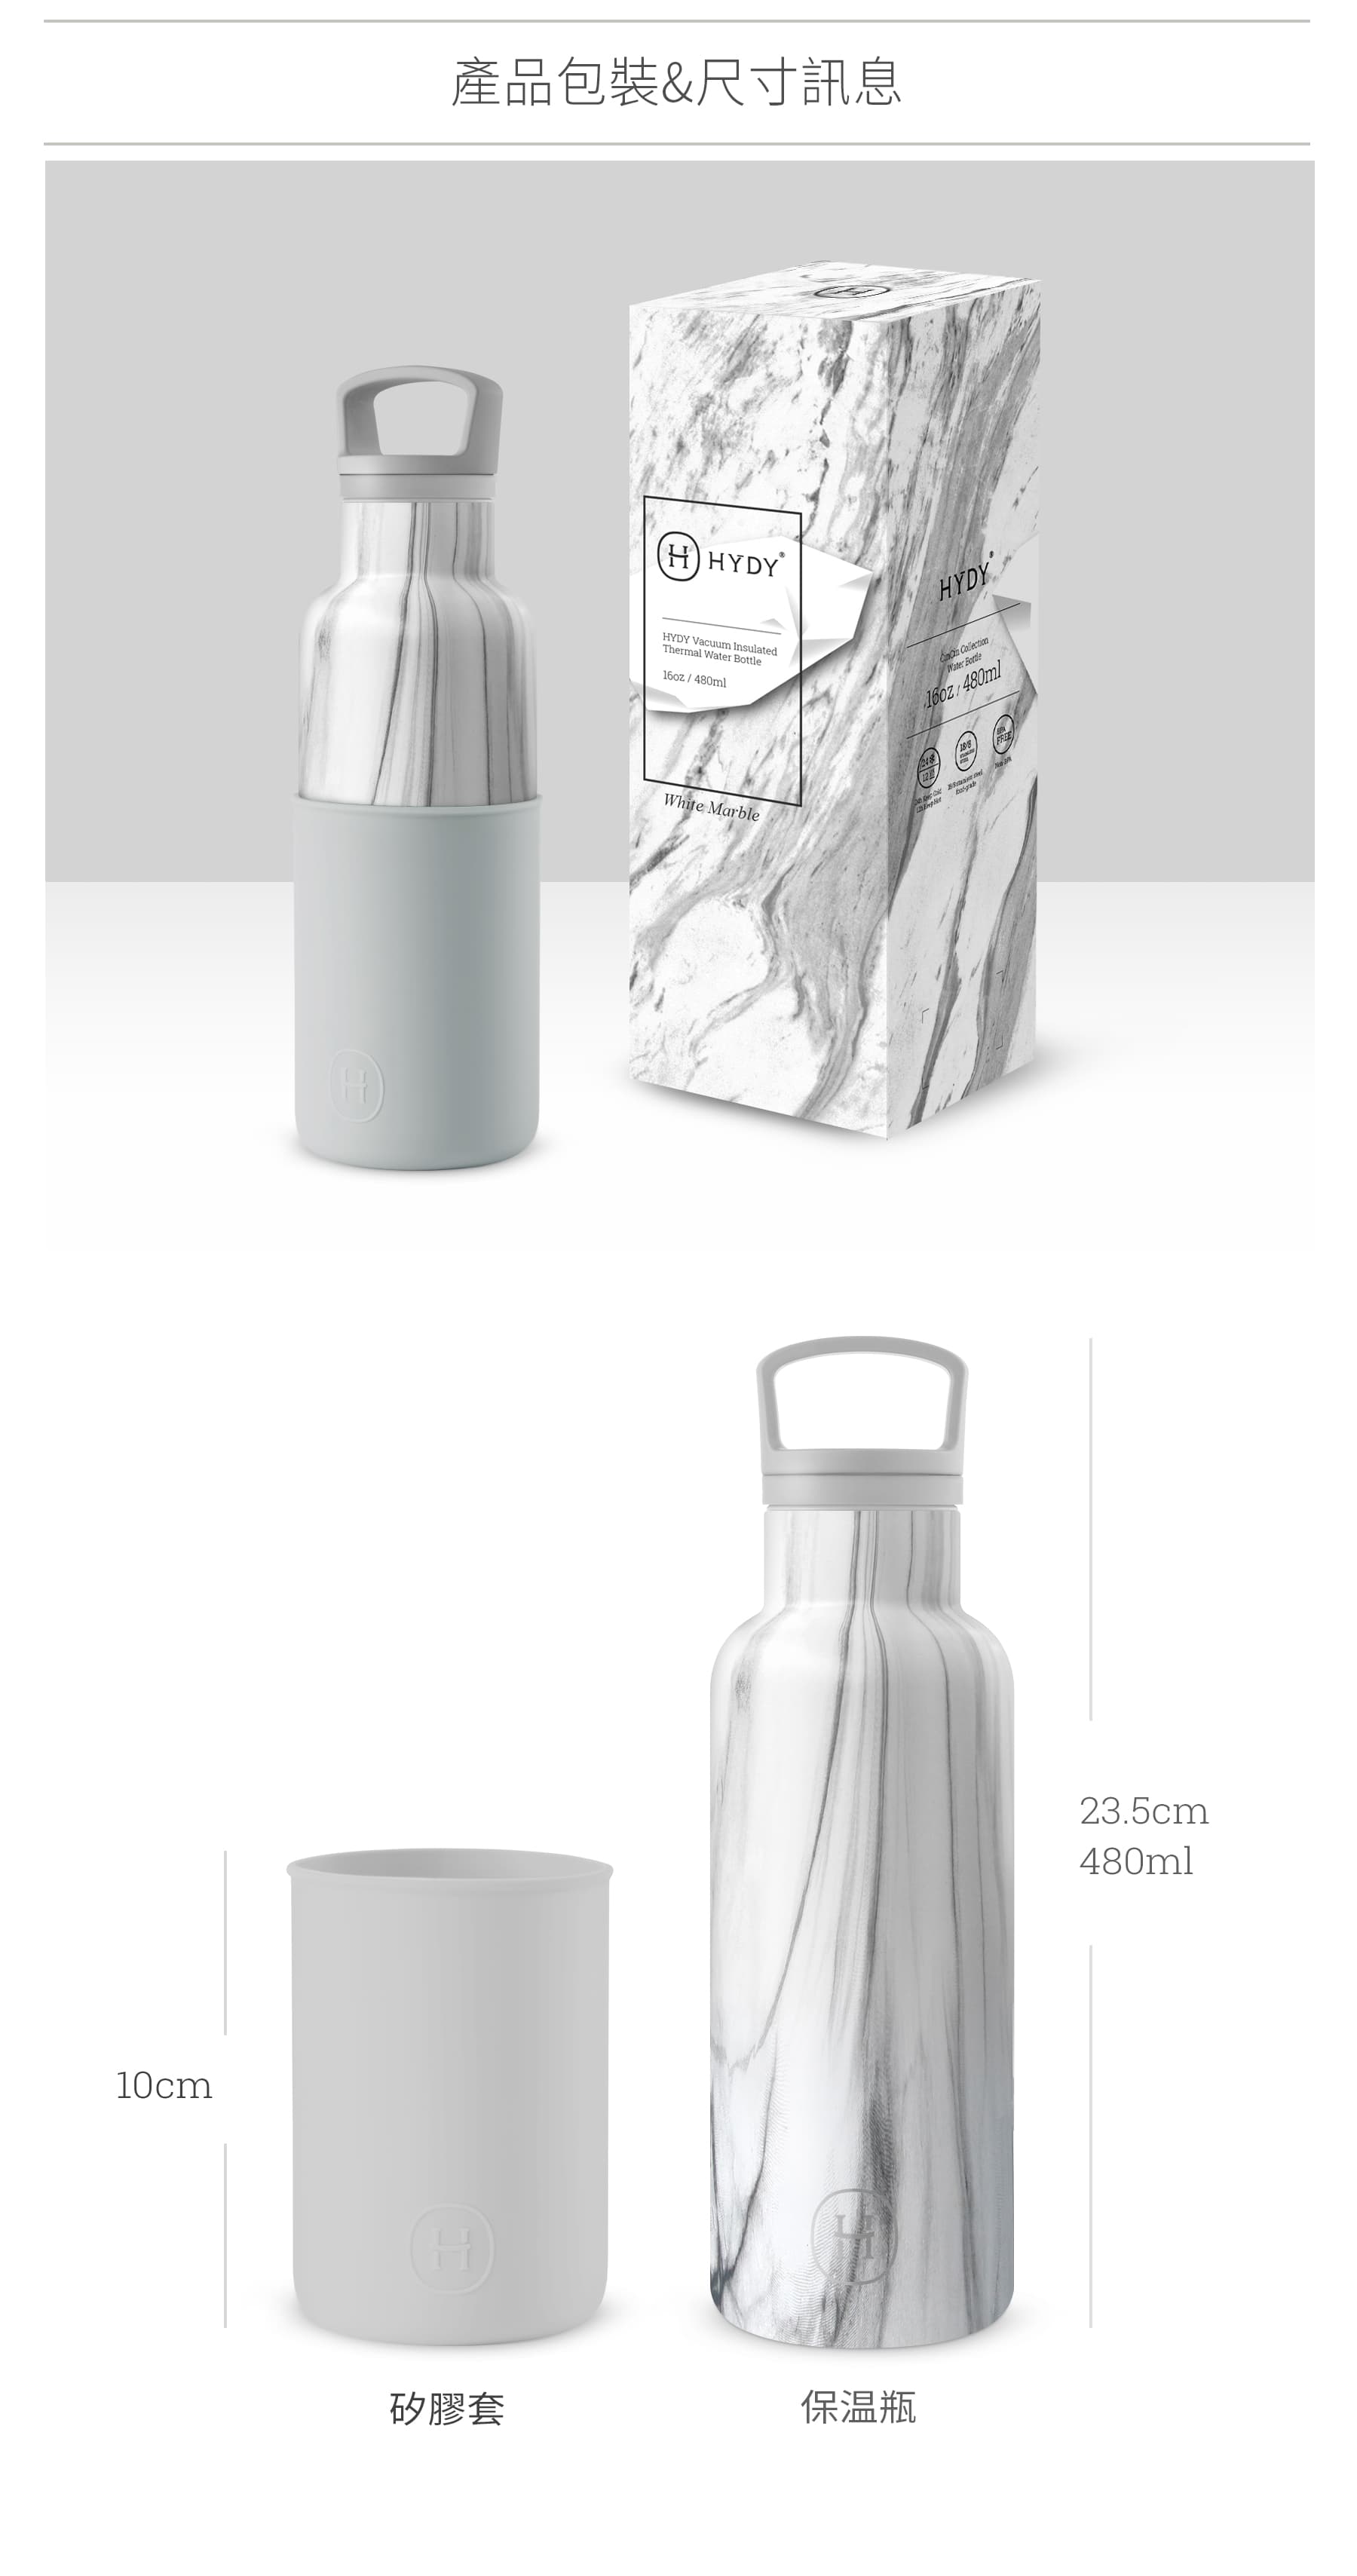 美國 HYDY 時尚不銹鋼保溫水瓶 480ml 大理石紋瓶 (雲灰)